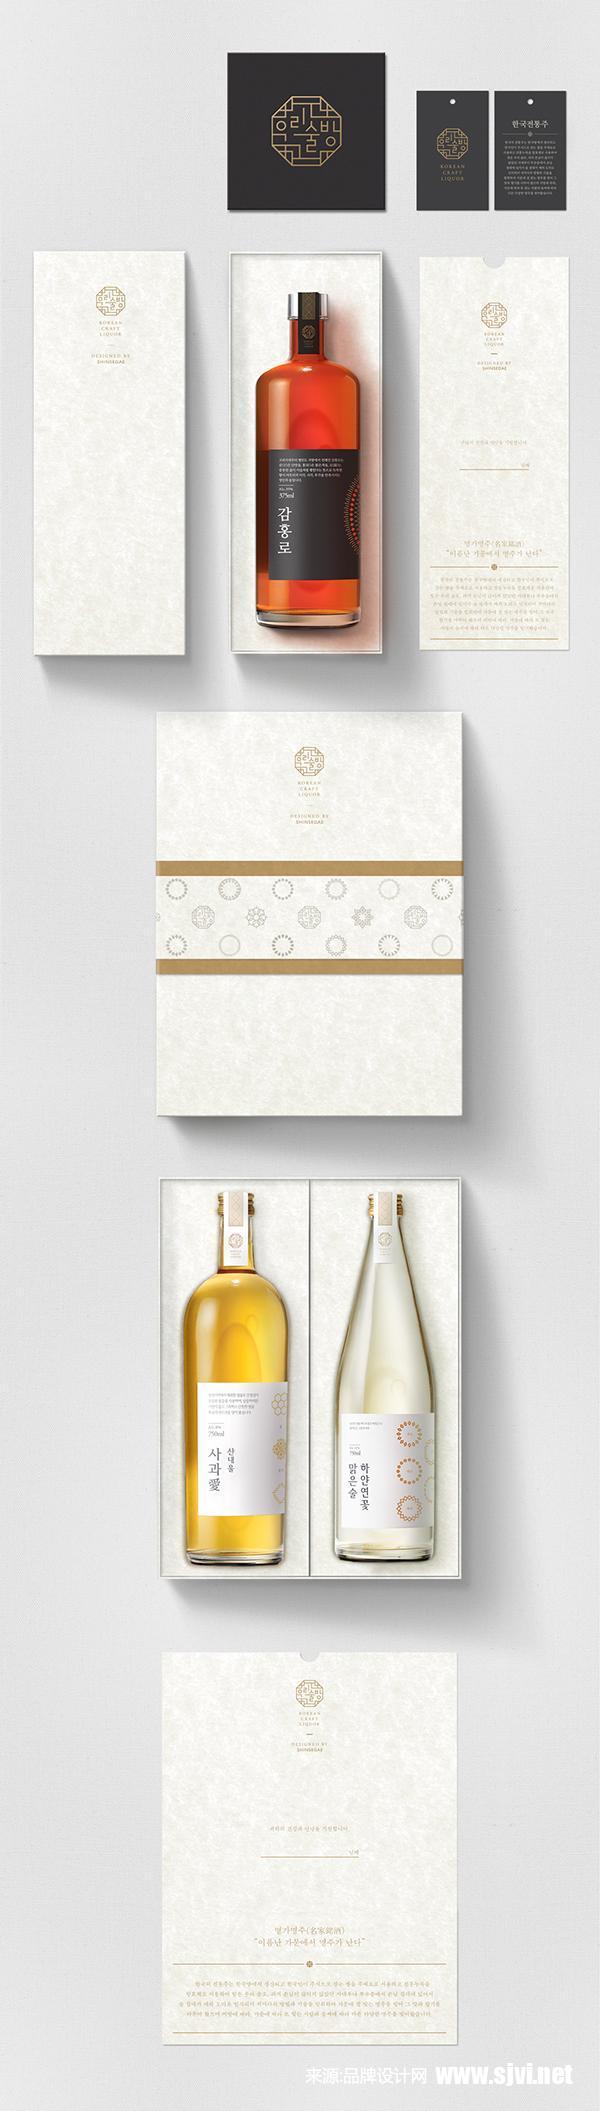 韩国白酒品牌包装设计